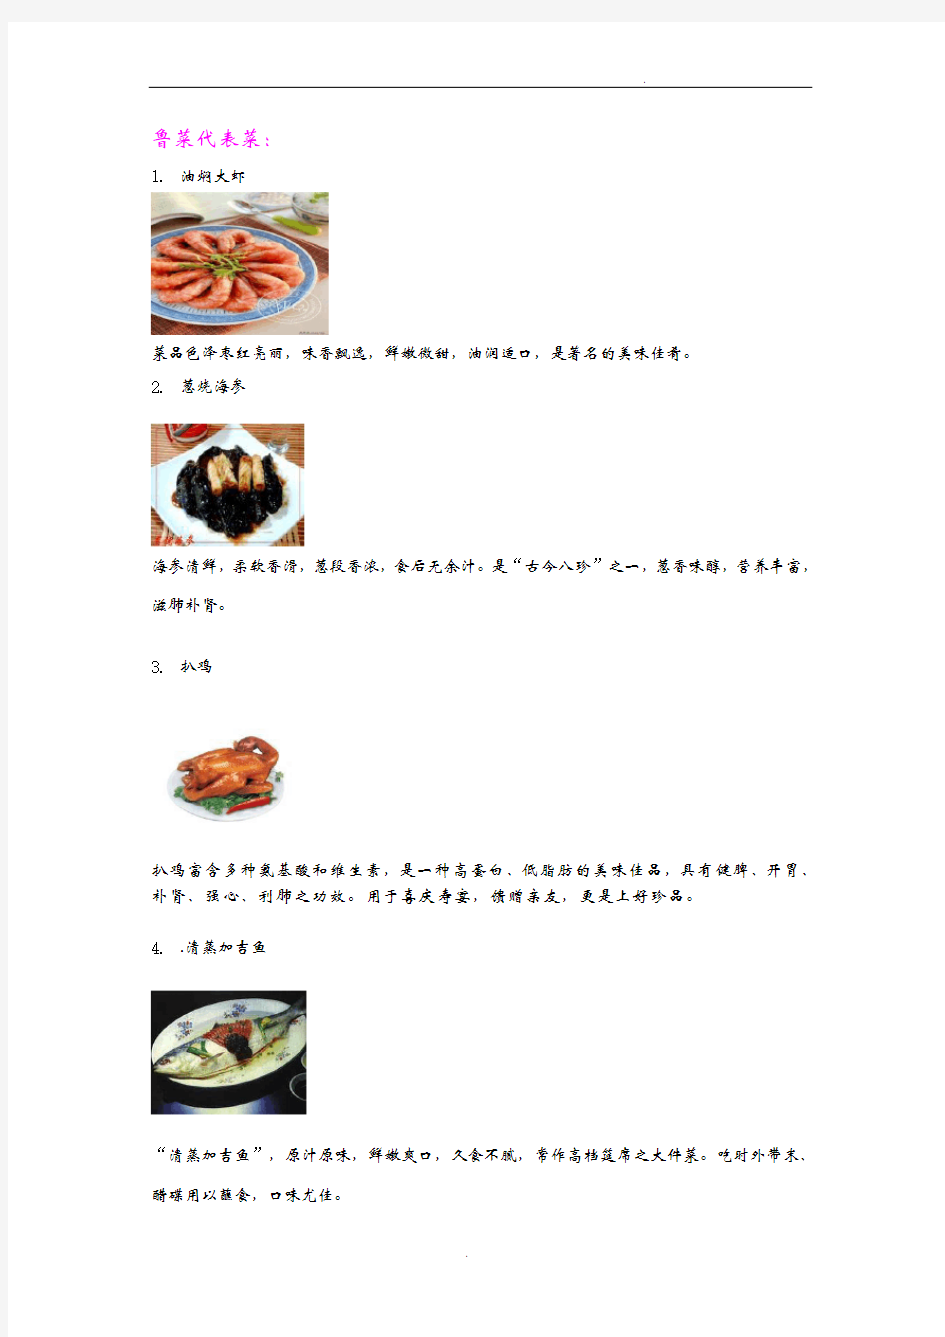 中国八大菜系菜品名称及图片